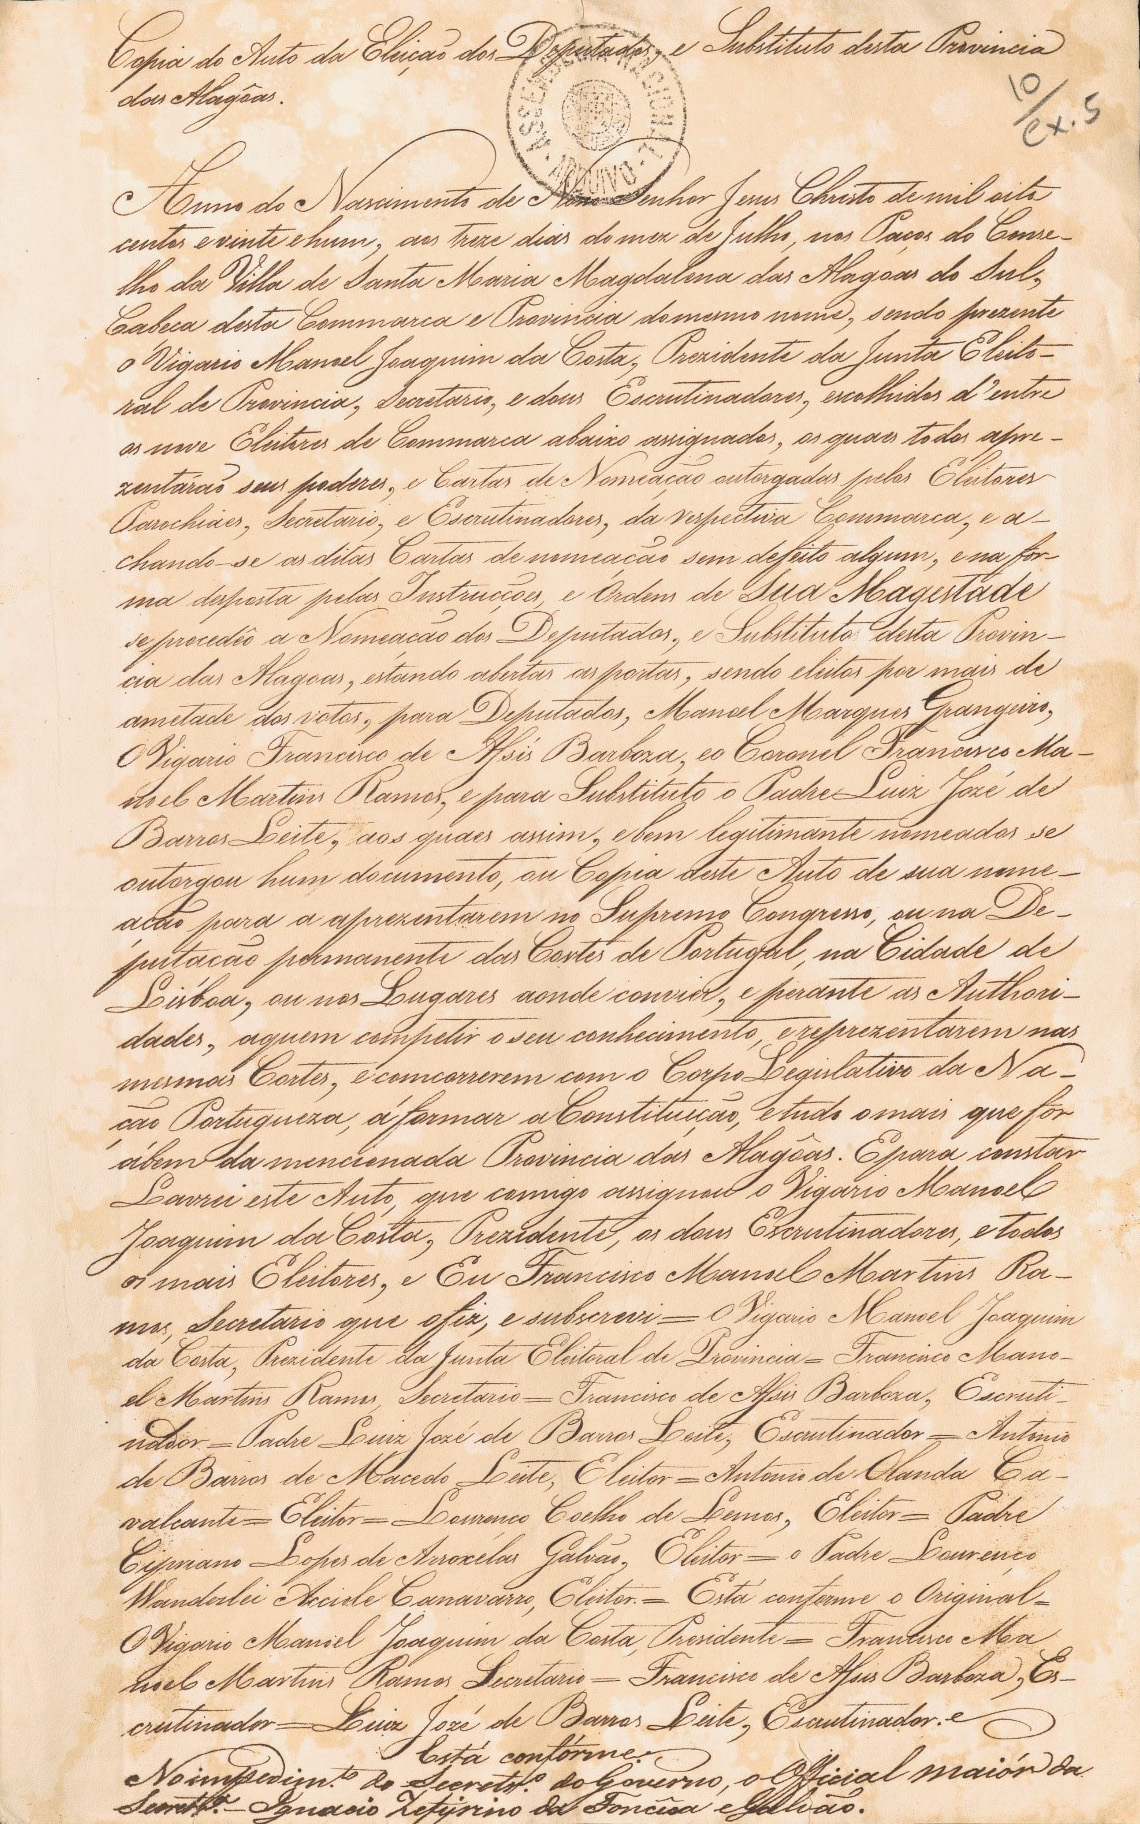 Cópia da Ata da Junta Eleitoral da Província de Alagôas – Auto de eleição. 13 de julho de 1821.